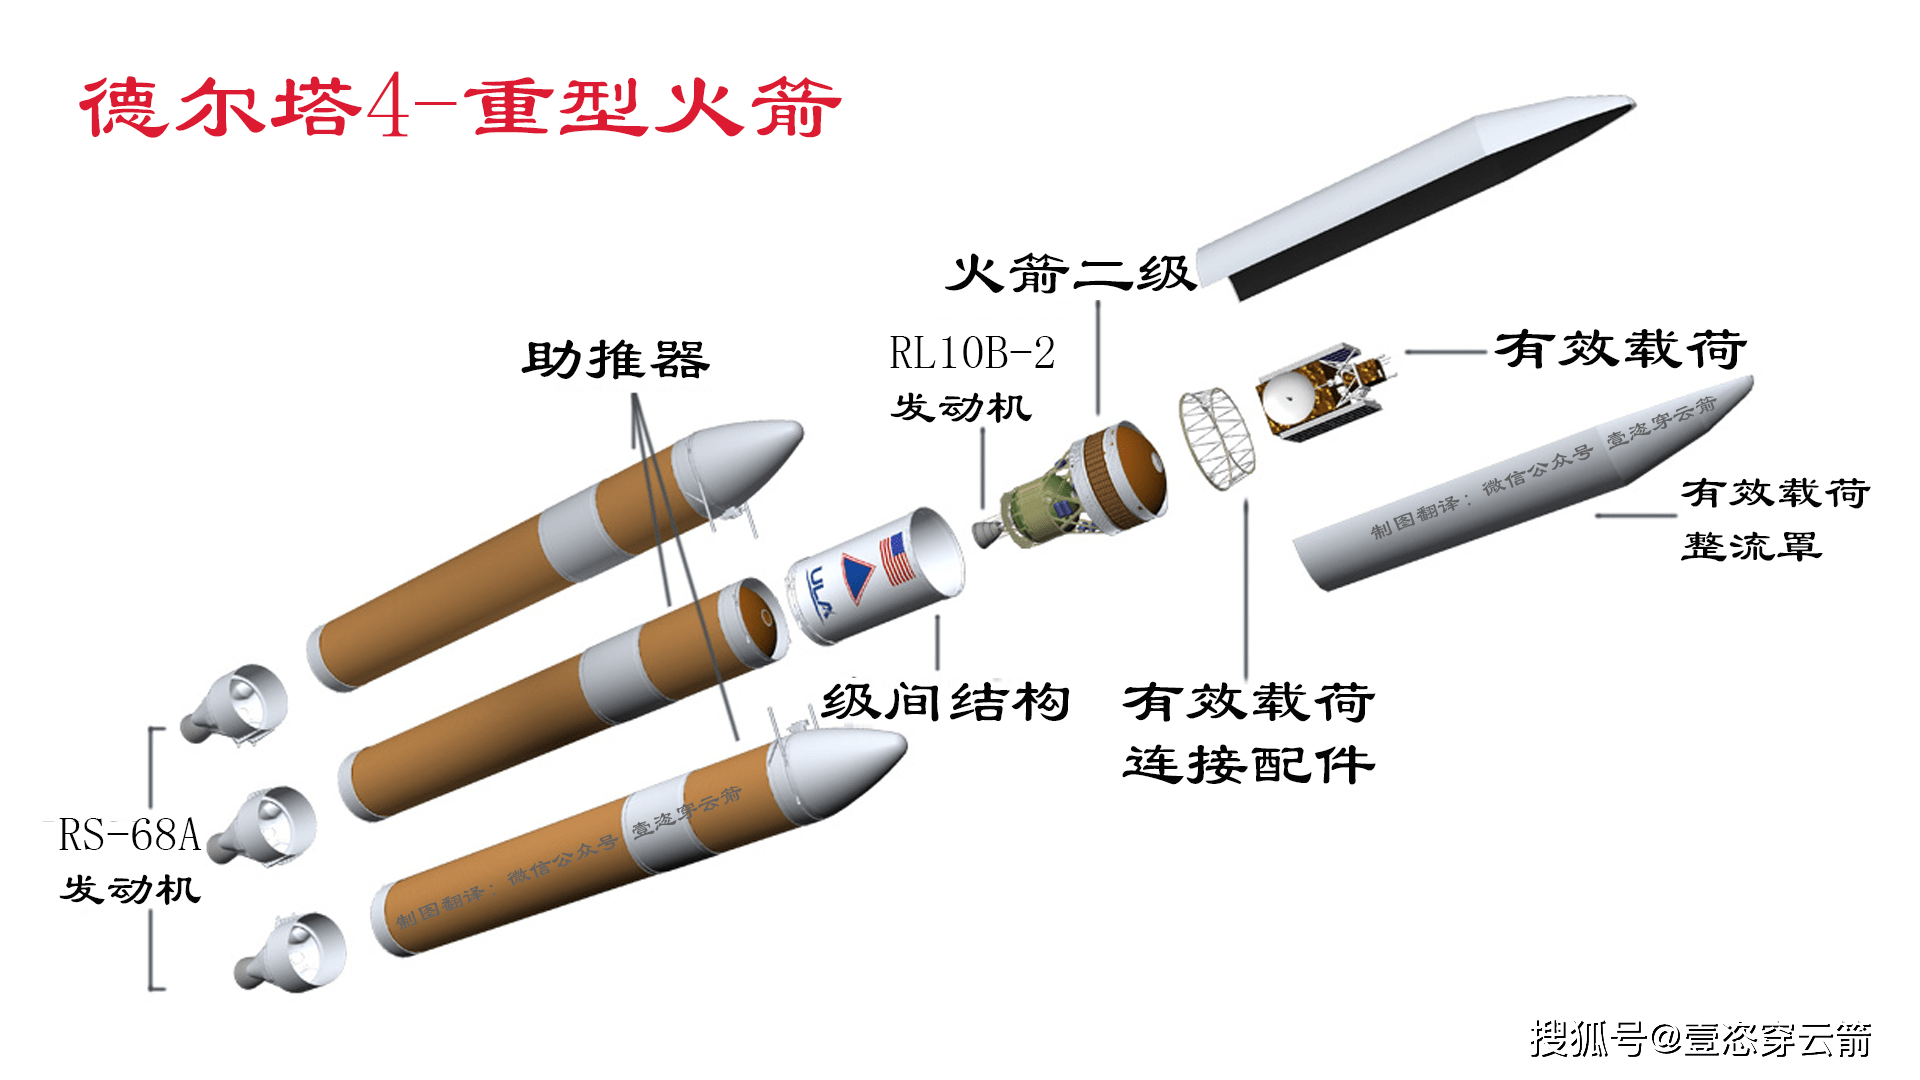 火箭发射塔结构图片